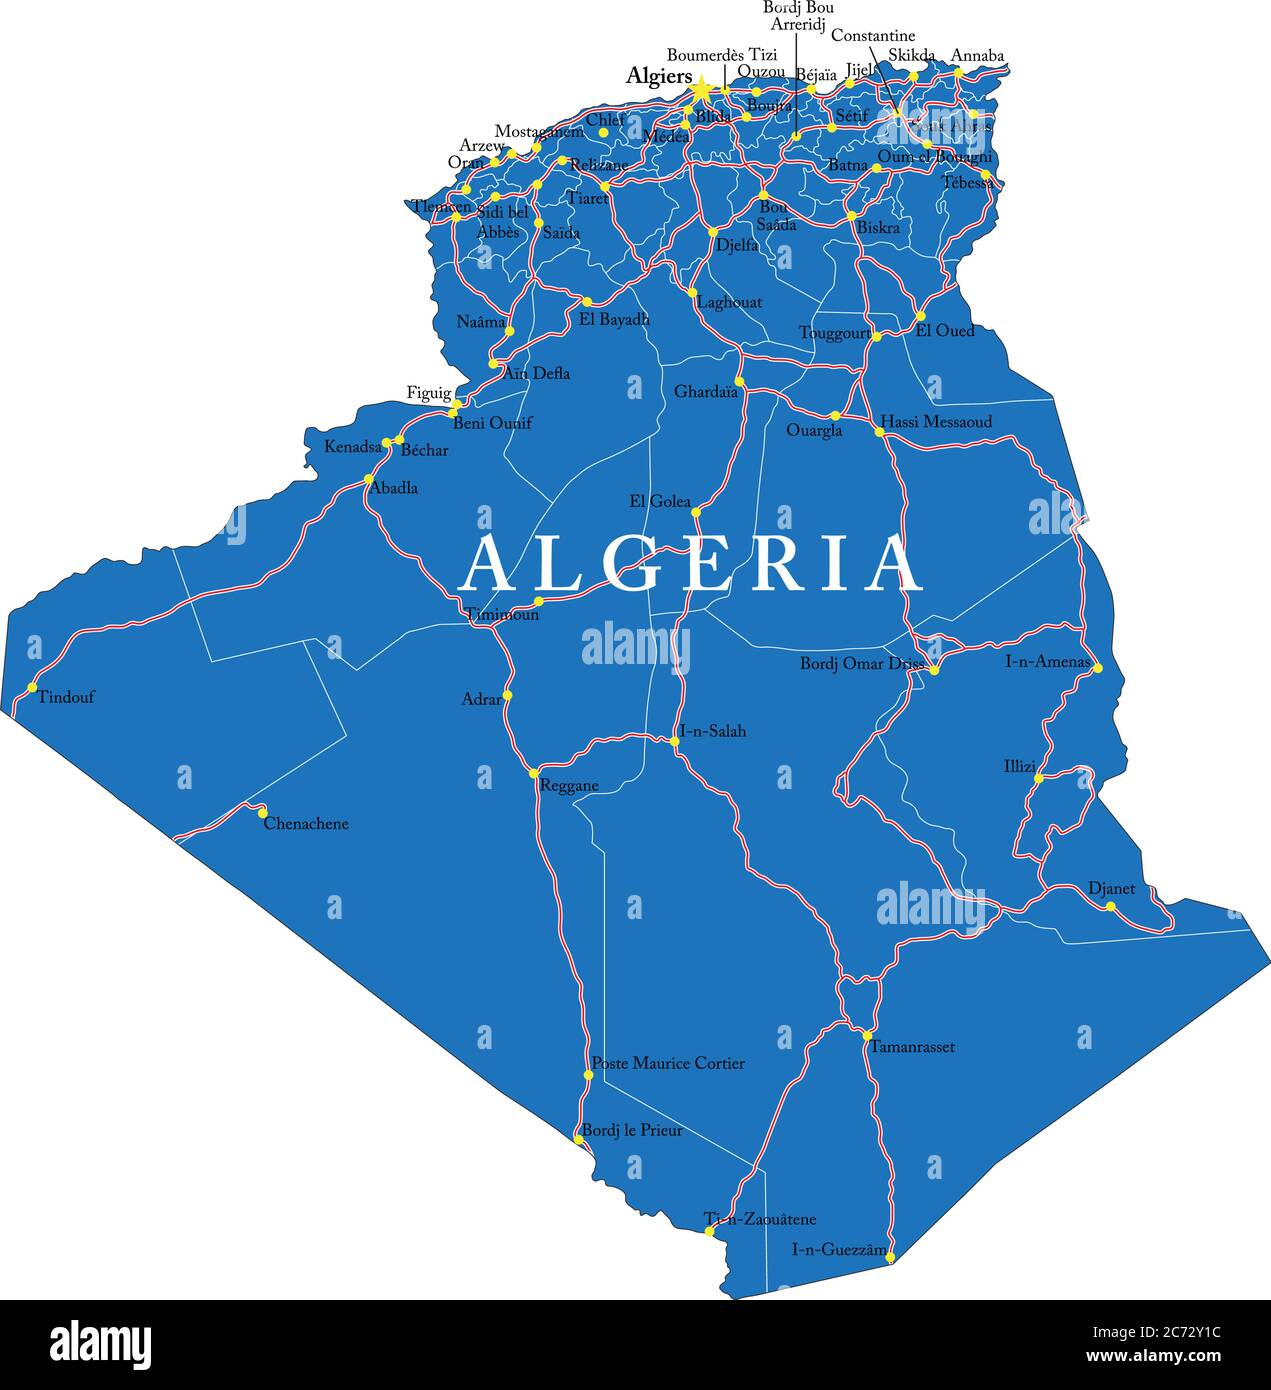 Mappa vettoriale dell'Algeria con regioni amministrative, città principali e strade. Illustrazione Vettoriale